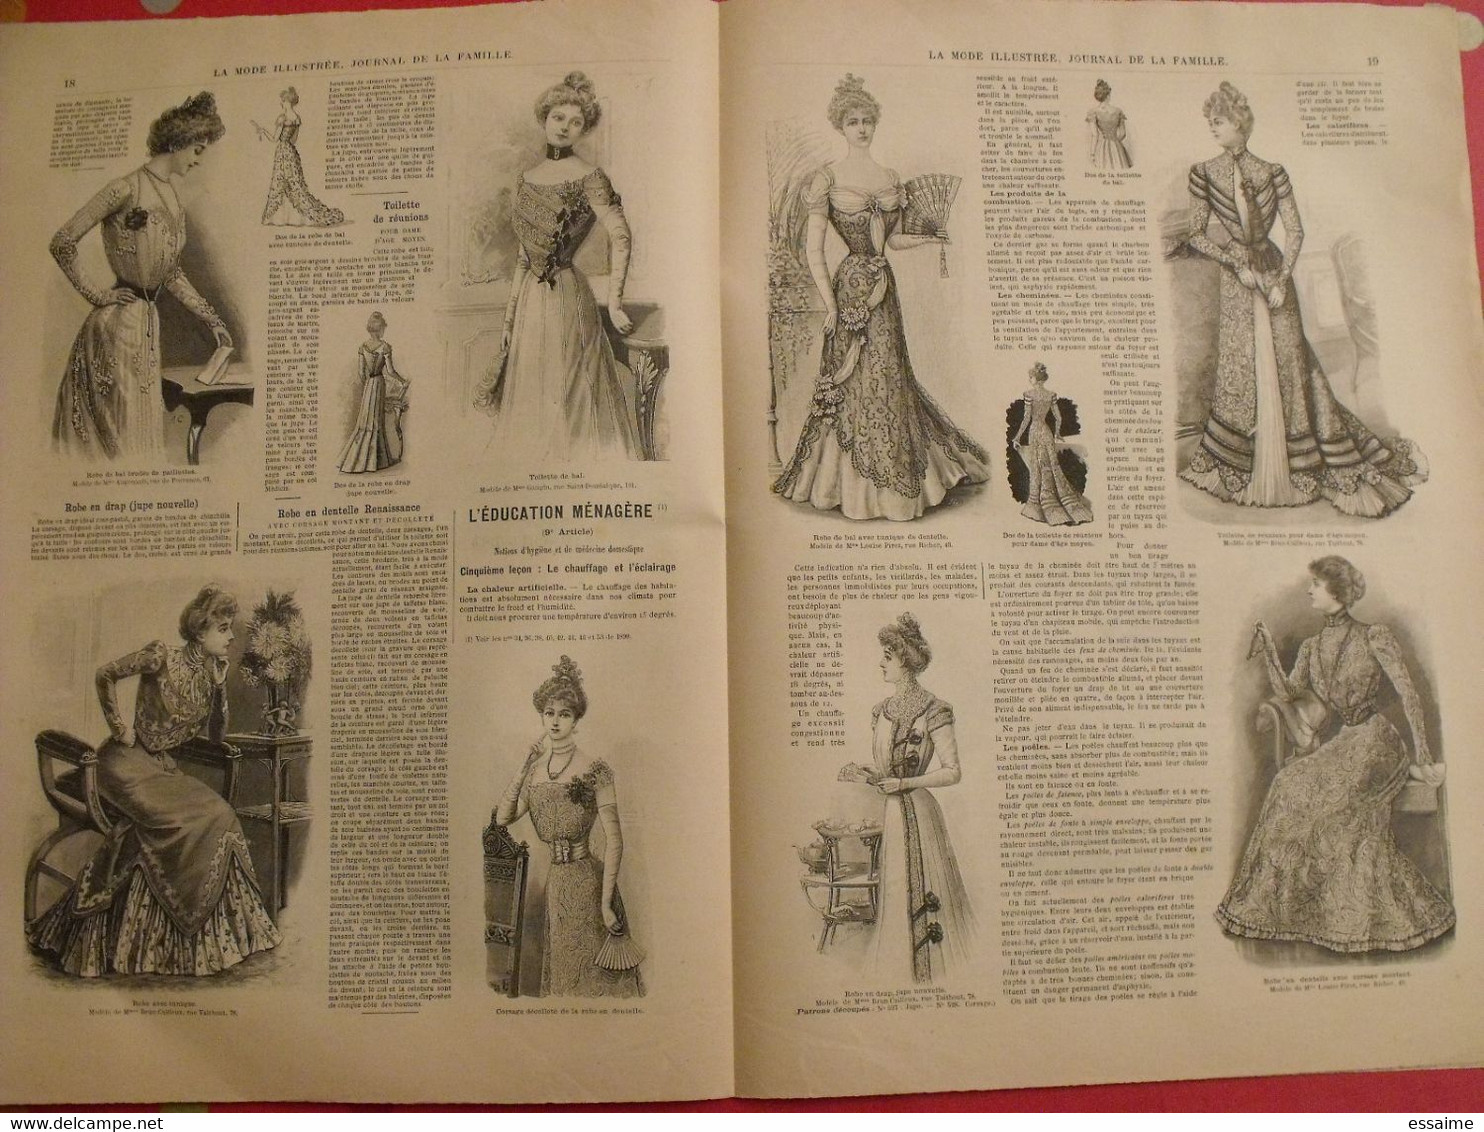 3 revues la mode illustrée, journal de la famille.  n° 1,2,3 de 1900. couverture en couleur. jolies gravures